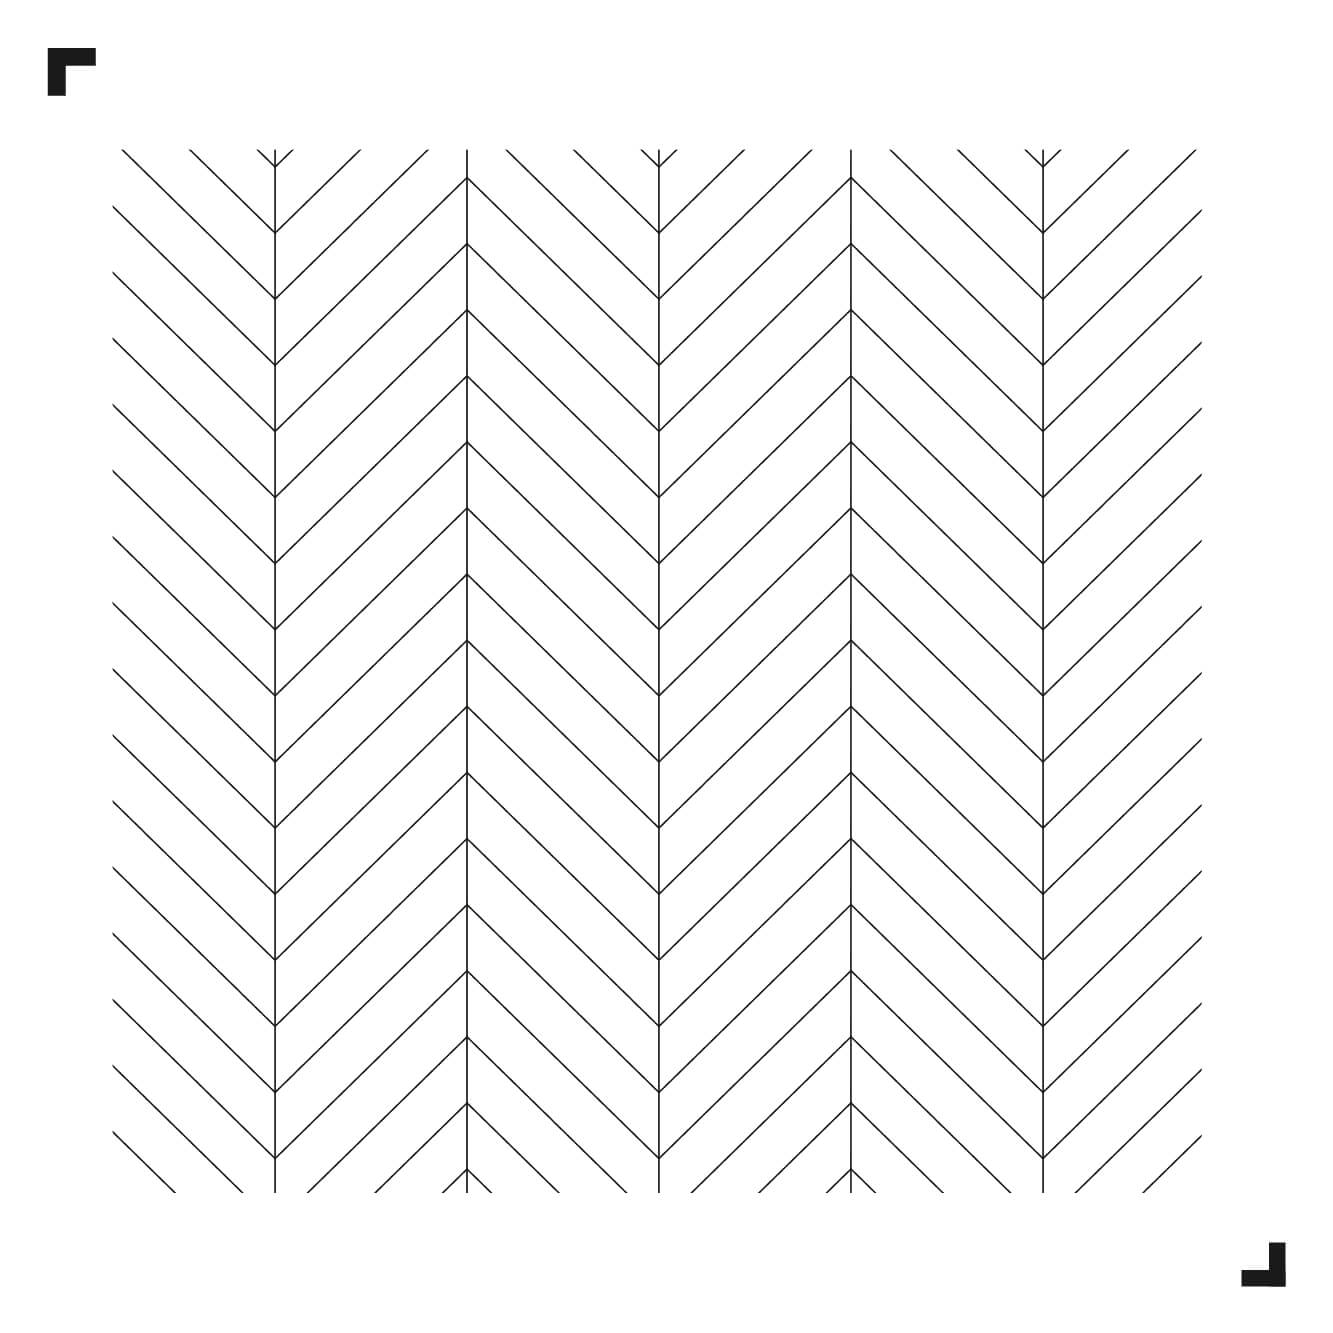 schwarz-weiße Zeichnung des Chevron-Musters - Moduleo Moods - Luxury Vinyl Tiles - Creative flooring